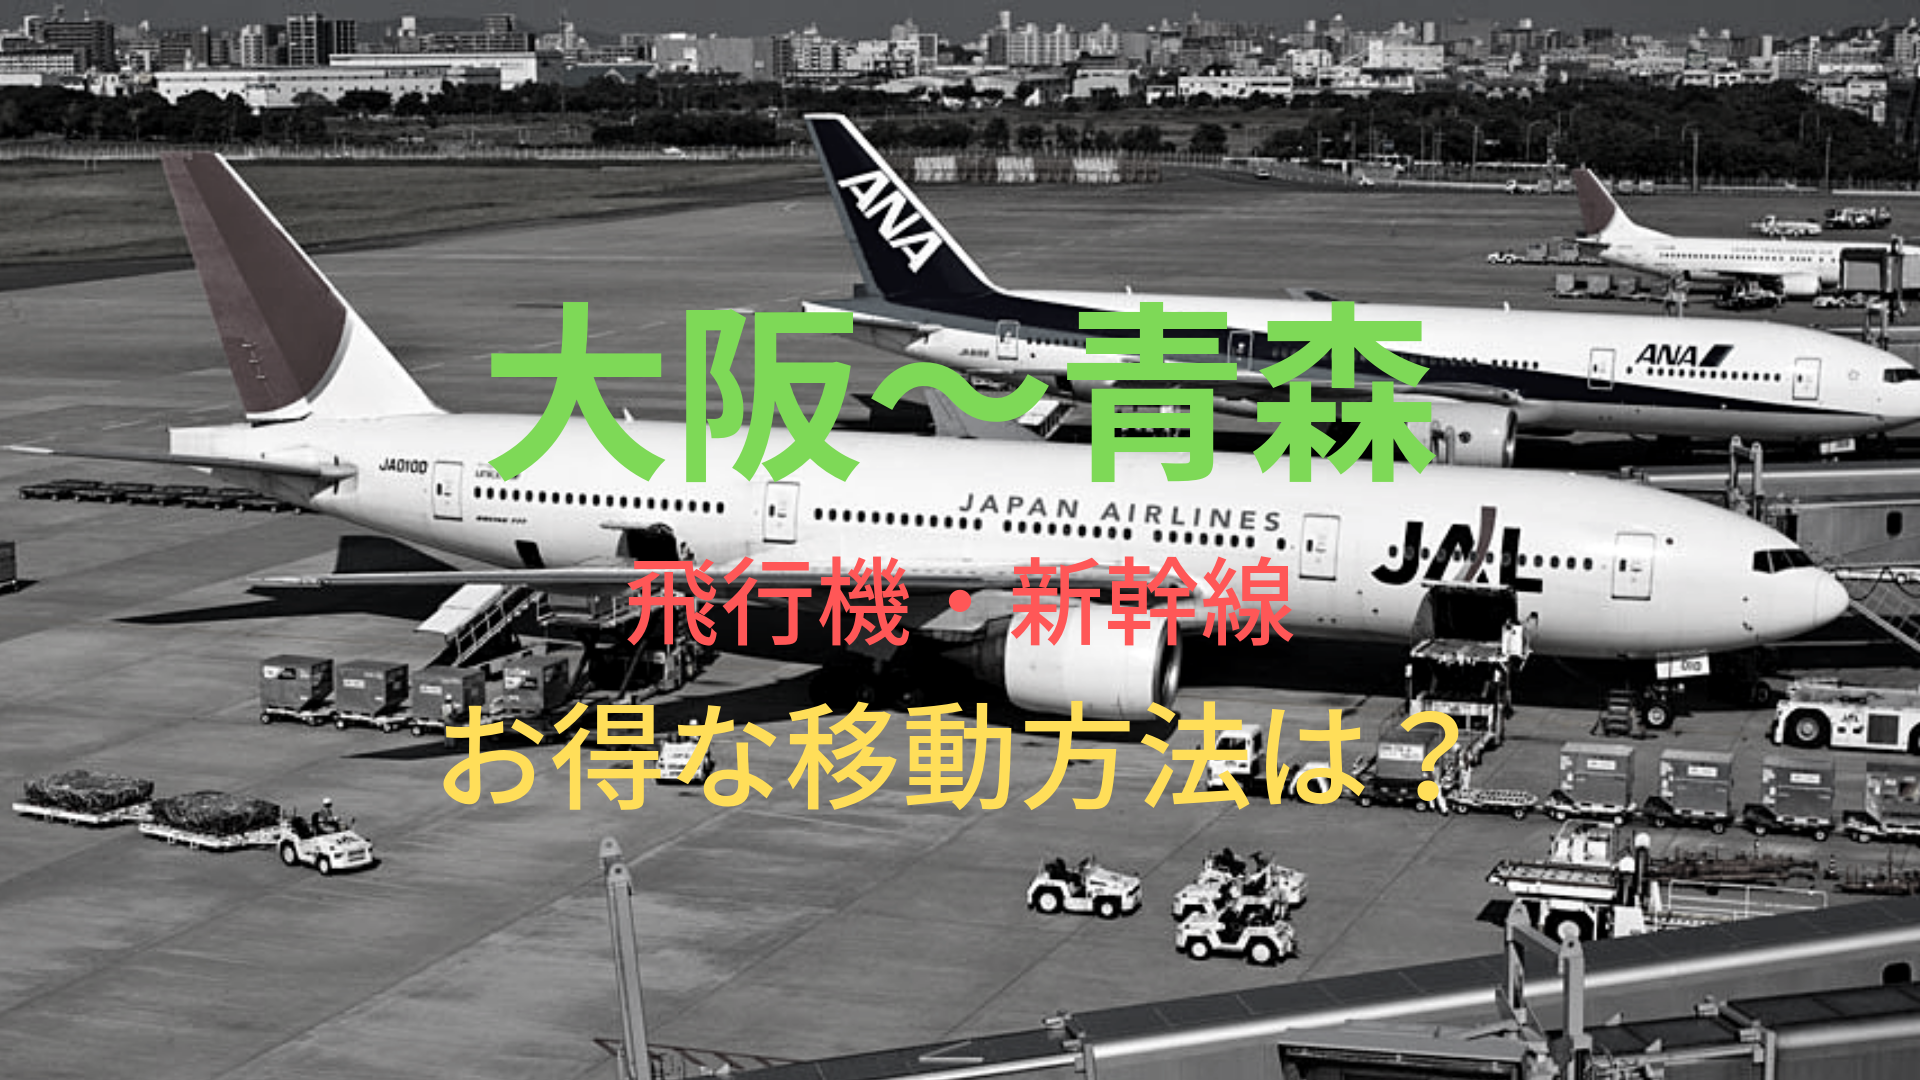 大阪 青森 9960円 格安で移動する方法は 飛行機 新幹線をそれぞれ比較 ばしたく交通